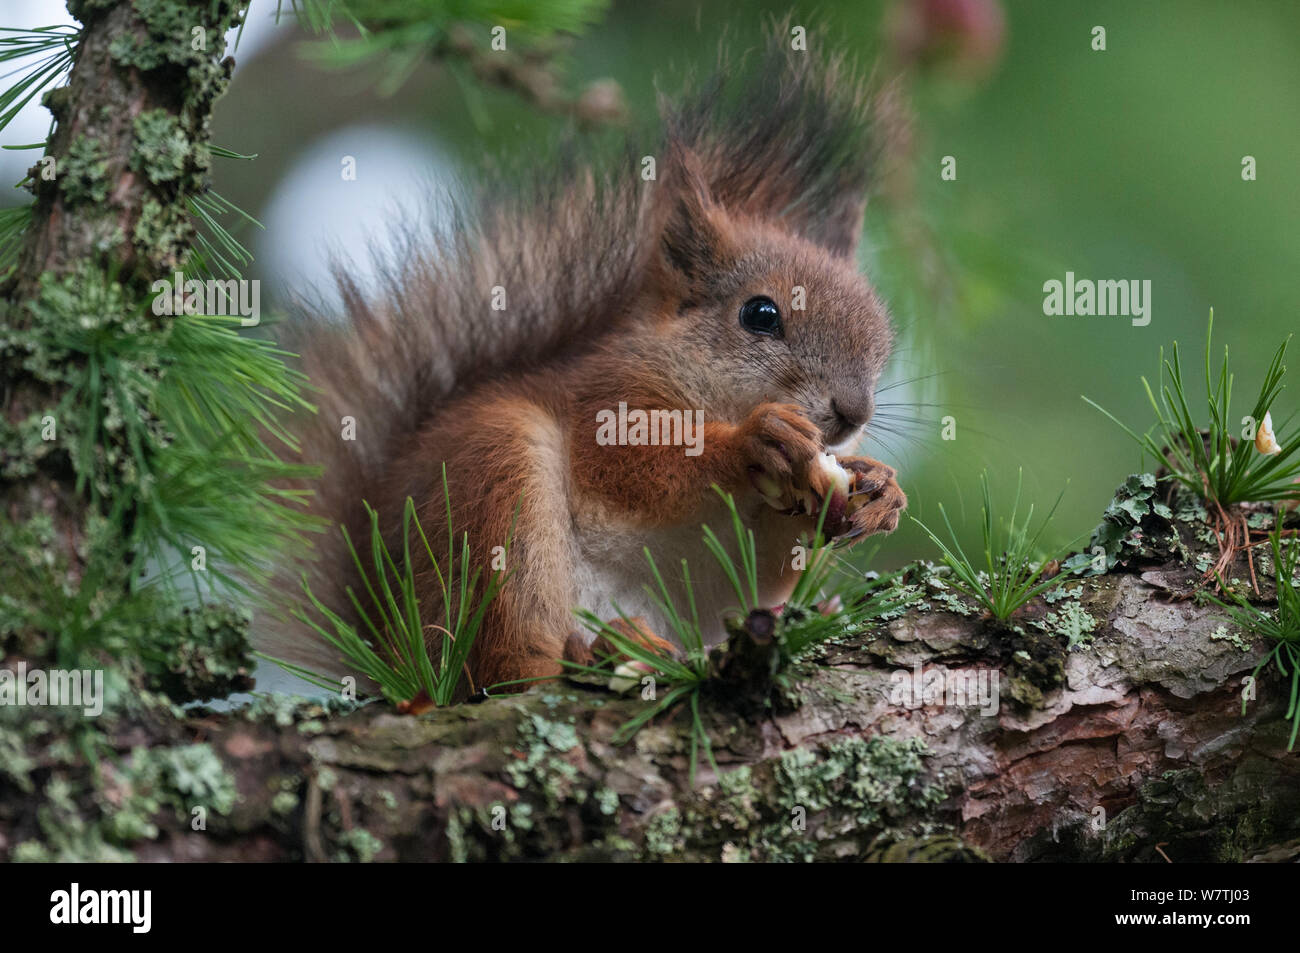 Eichhörnchen (Sciurus vulgaris) im Sommer Mantel Fütterung auf Mutter, zentrale Finnland, Juni. Stockfoto